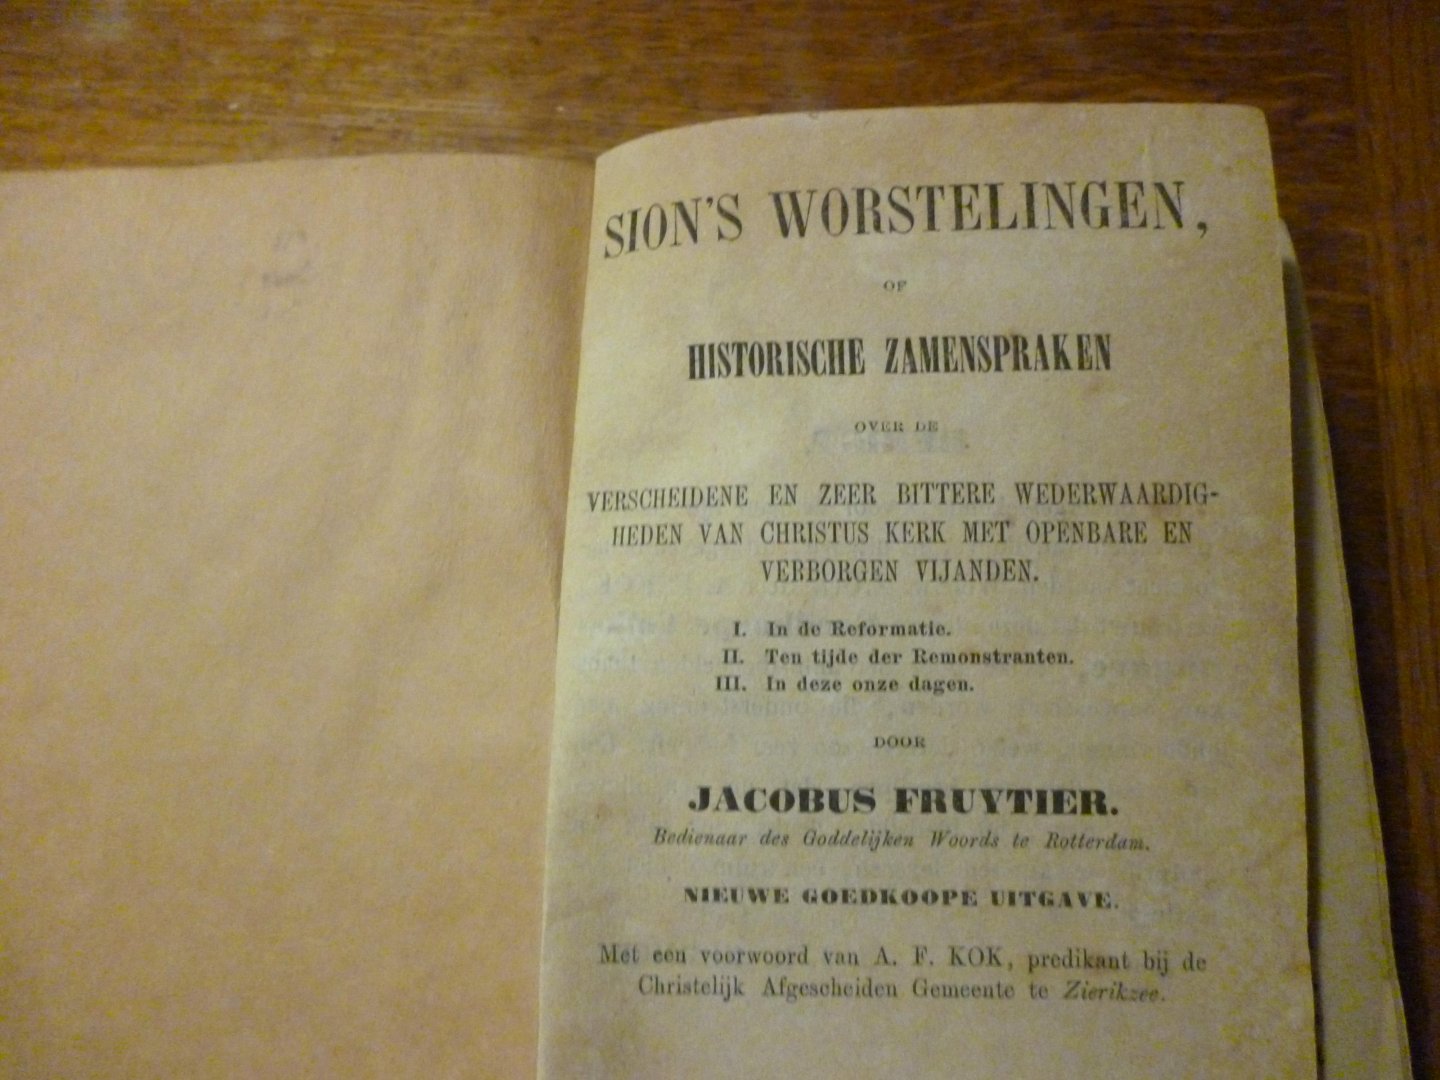 Fruytier Jacobus - Sions's worstelingen of historische zamenspraken